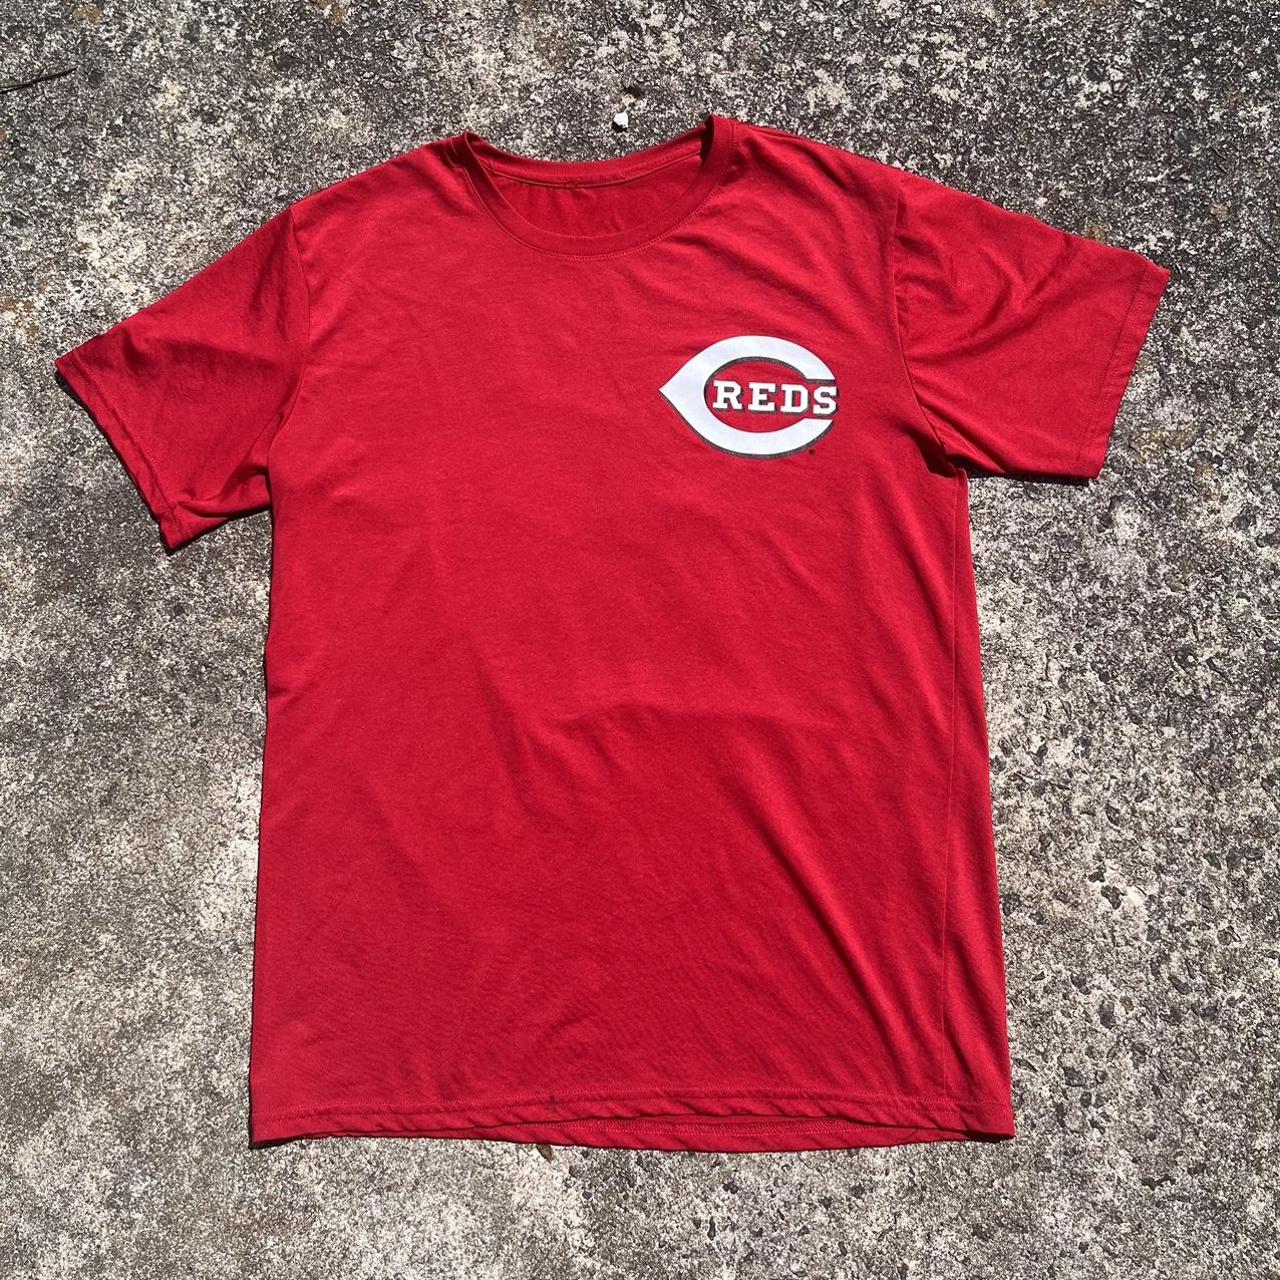 Joey Votto Cincinnati Reds jersey, Nike, Mens S - Depop